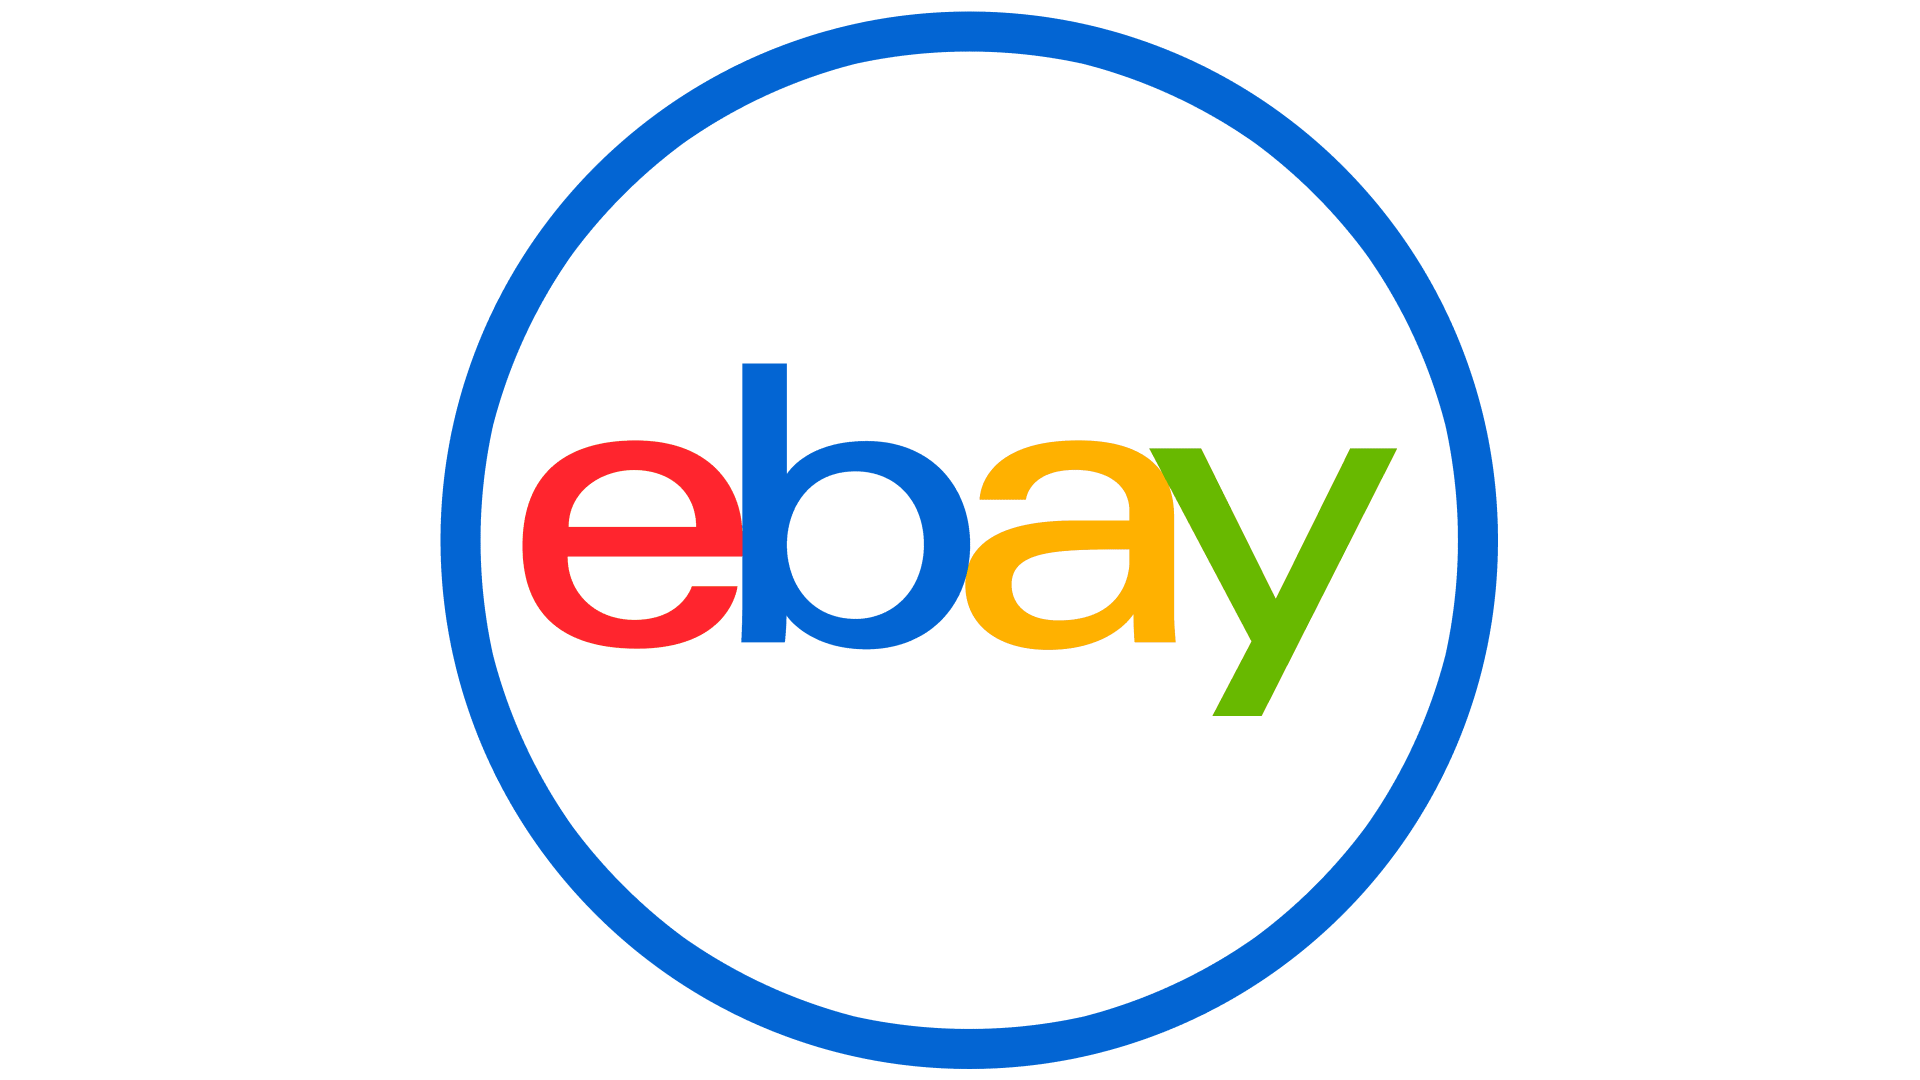 Ebay emblem